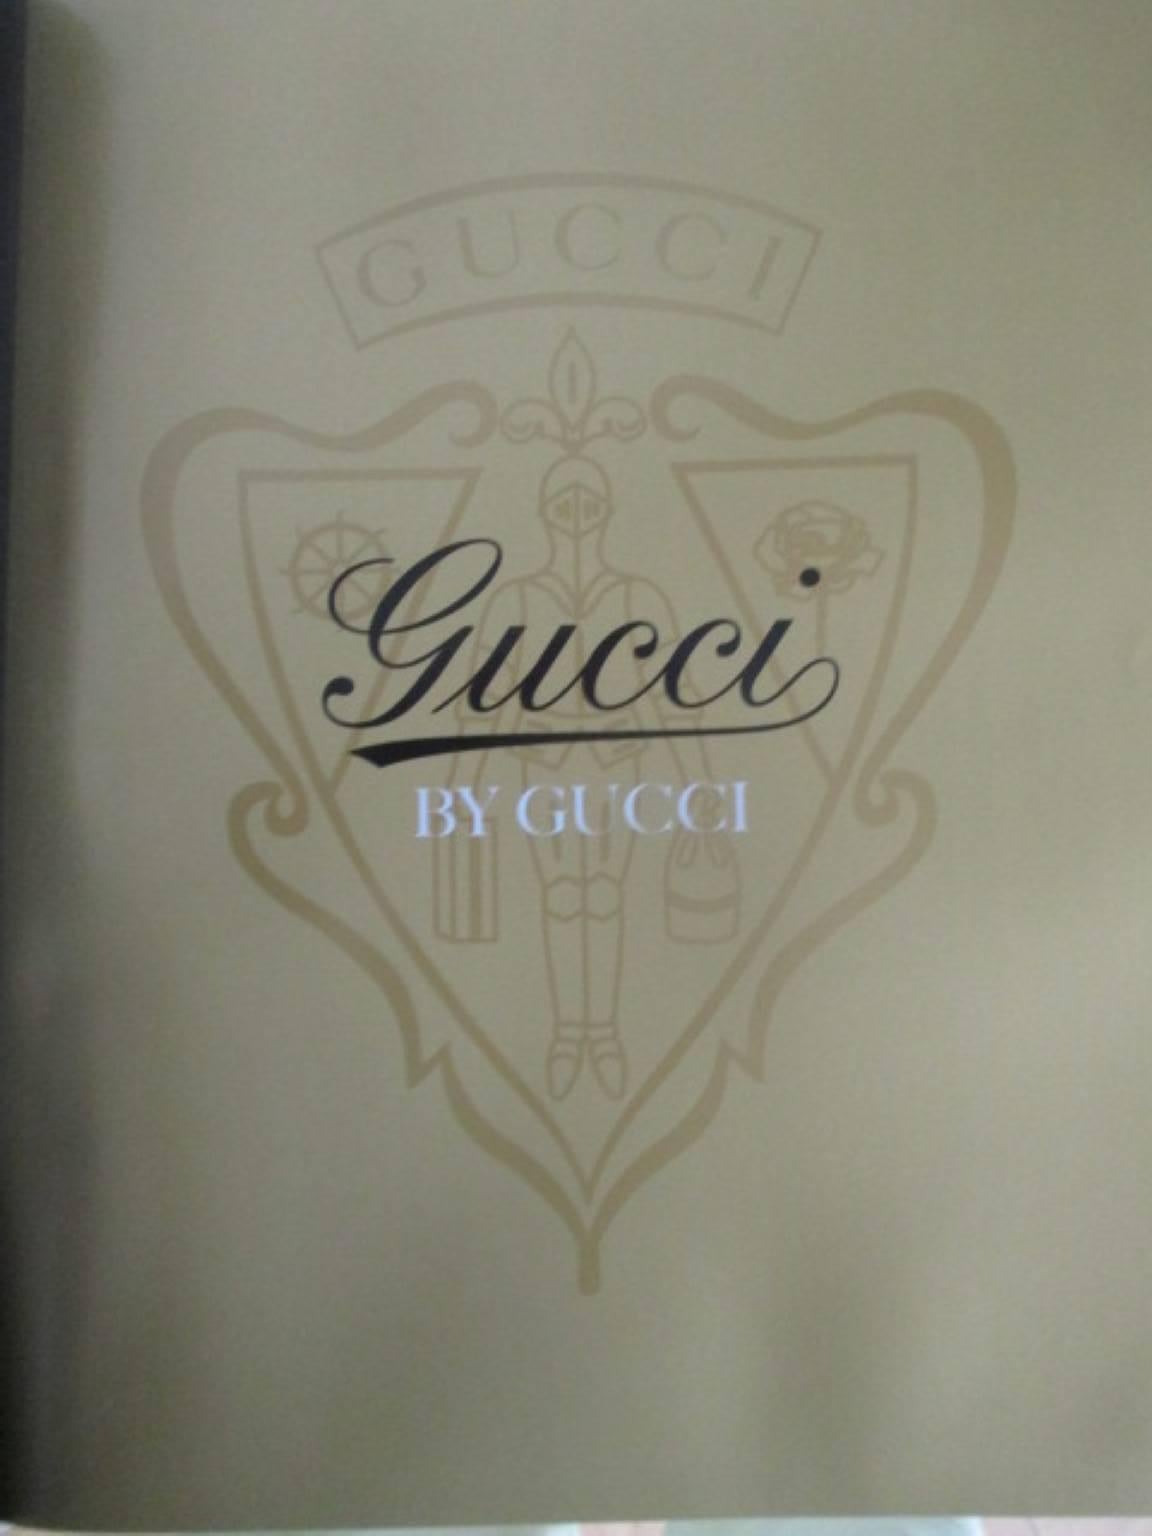 gucci by gucci book